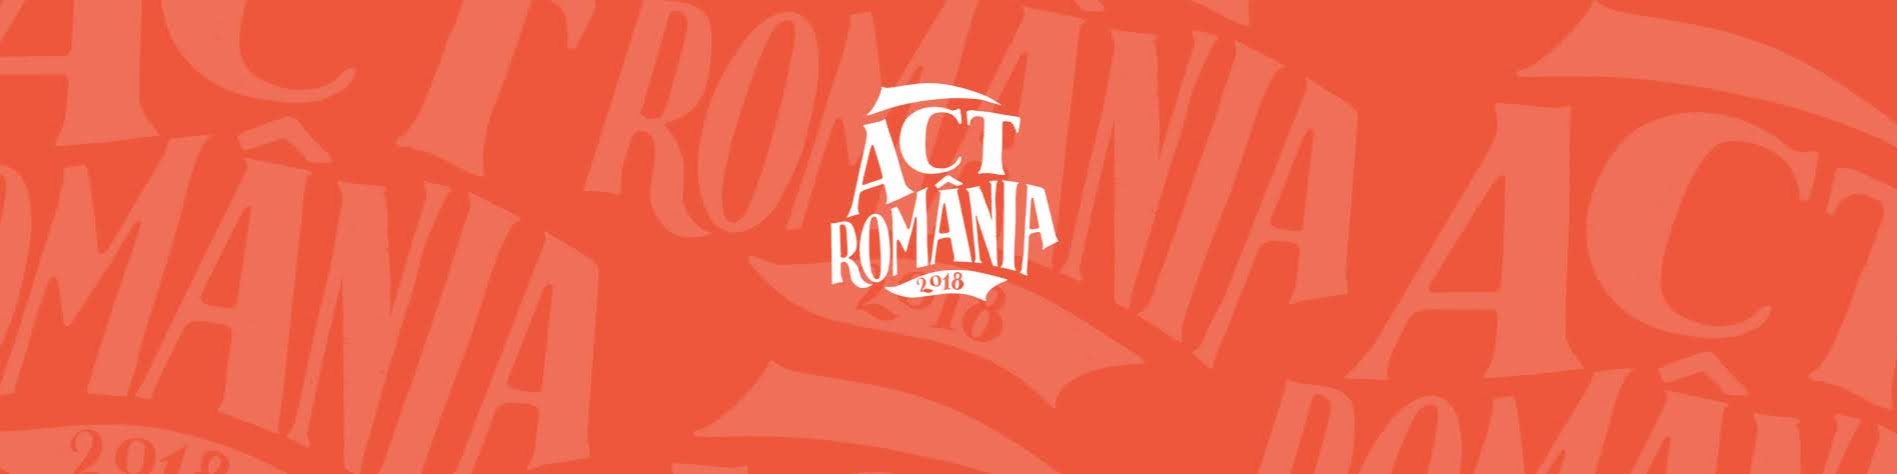 Conferința ACT România 2018 - 12-13 Octombrie 2018, Timișpara